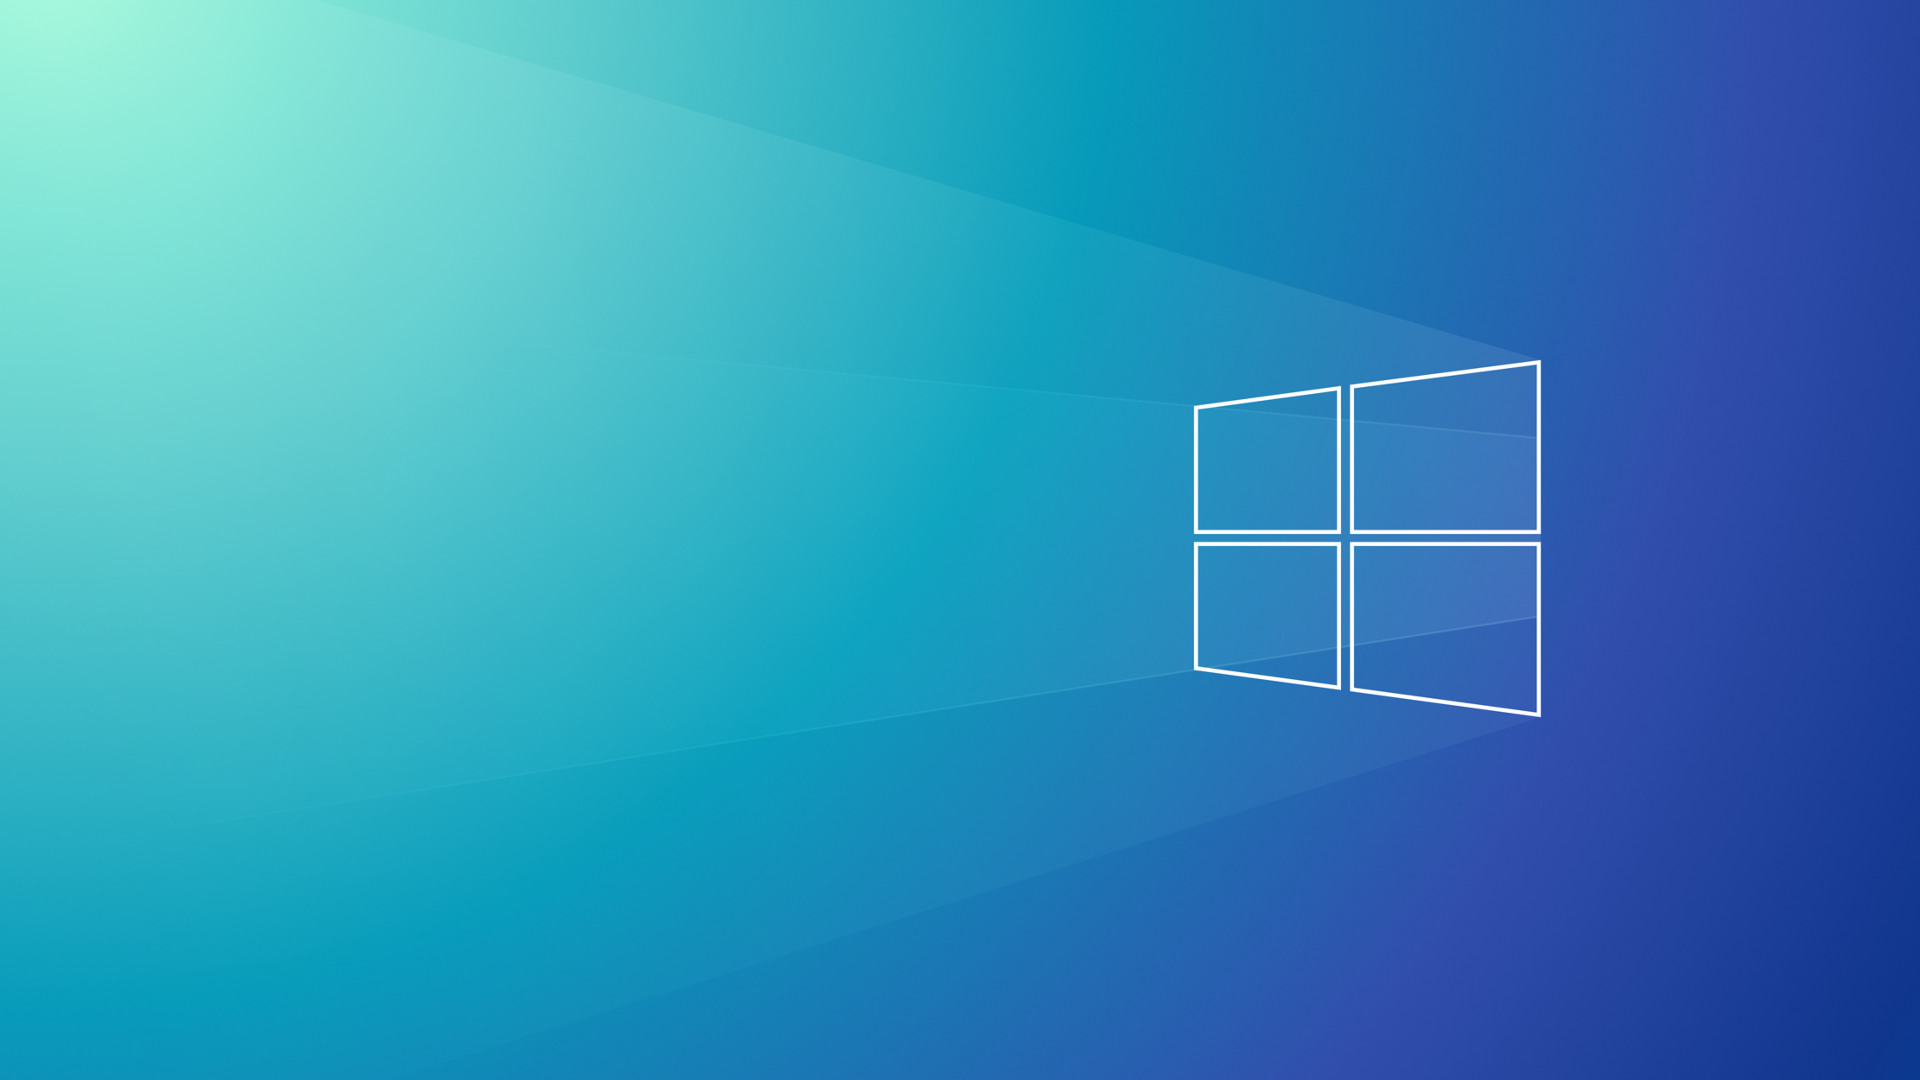 Windows 11 Wallpapers   Top 25 Best Windows 11 Backgrounds Download 1920x1080